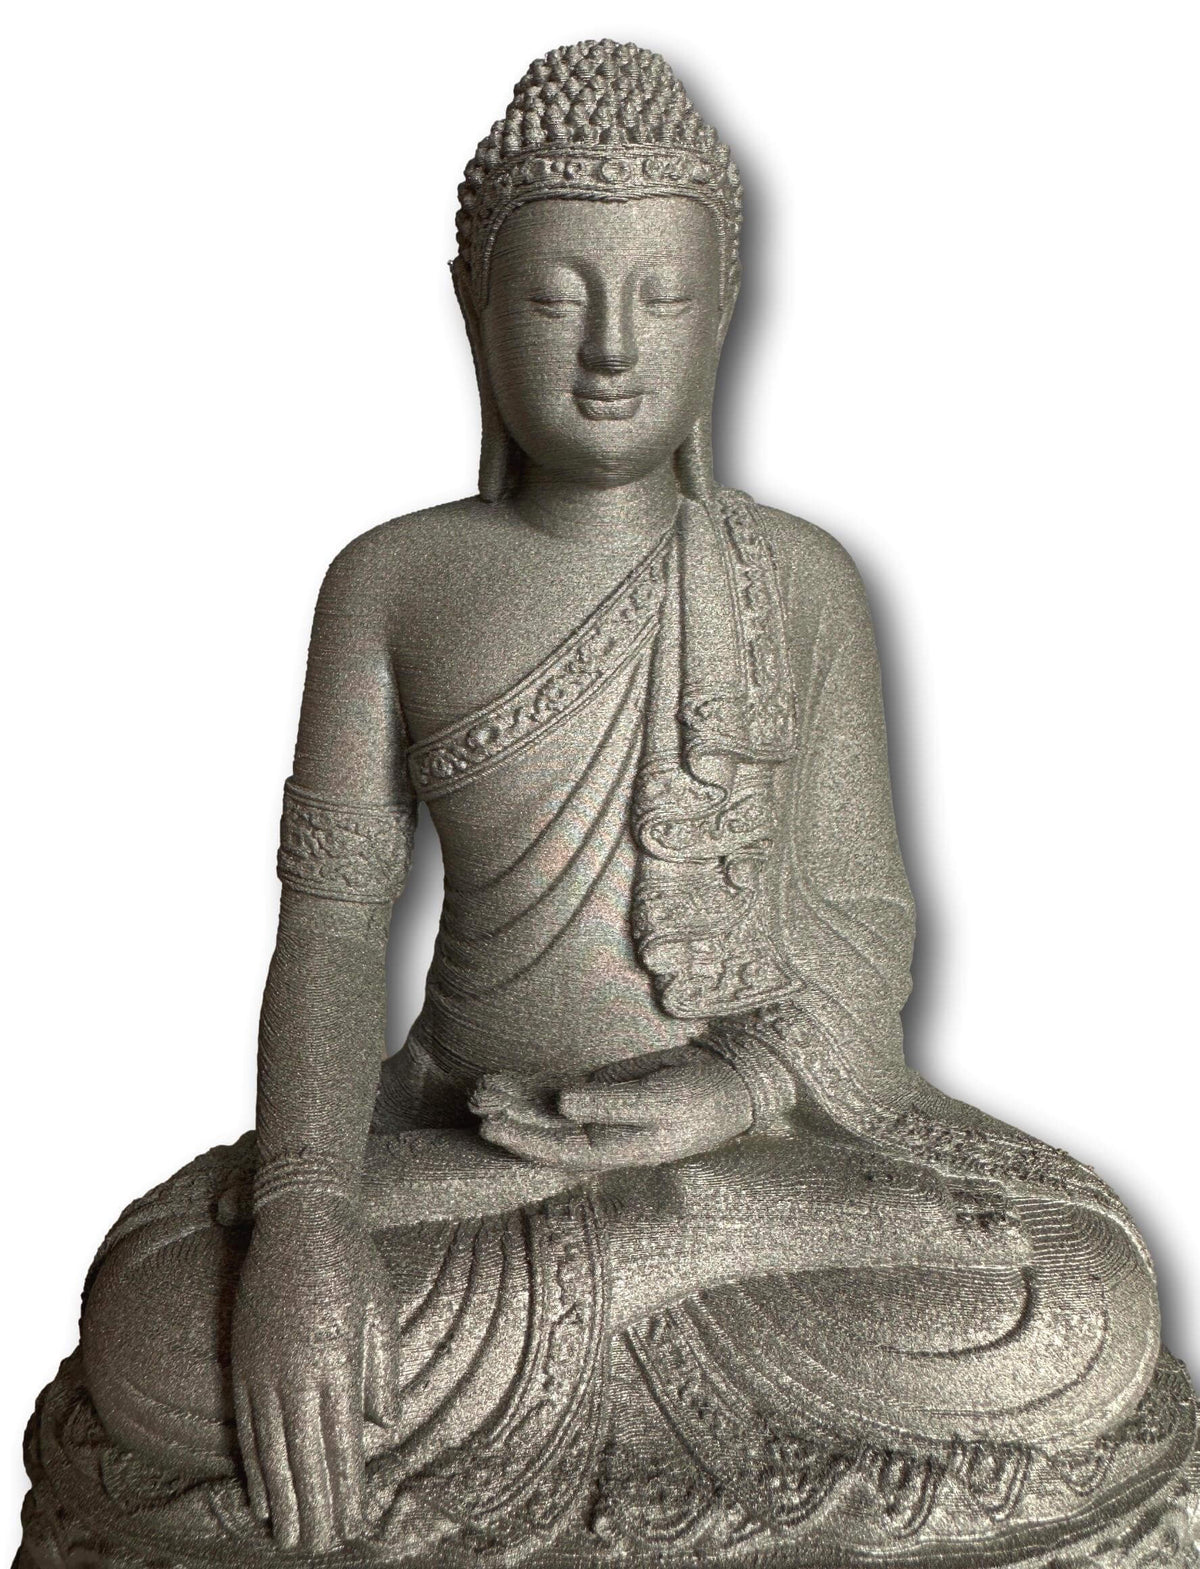 Silver Buddha Statue - Made In Australia 🇦🇺 🦘 Eco-friendly 🌱